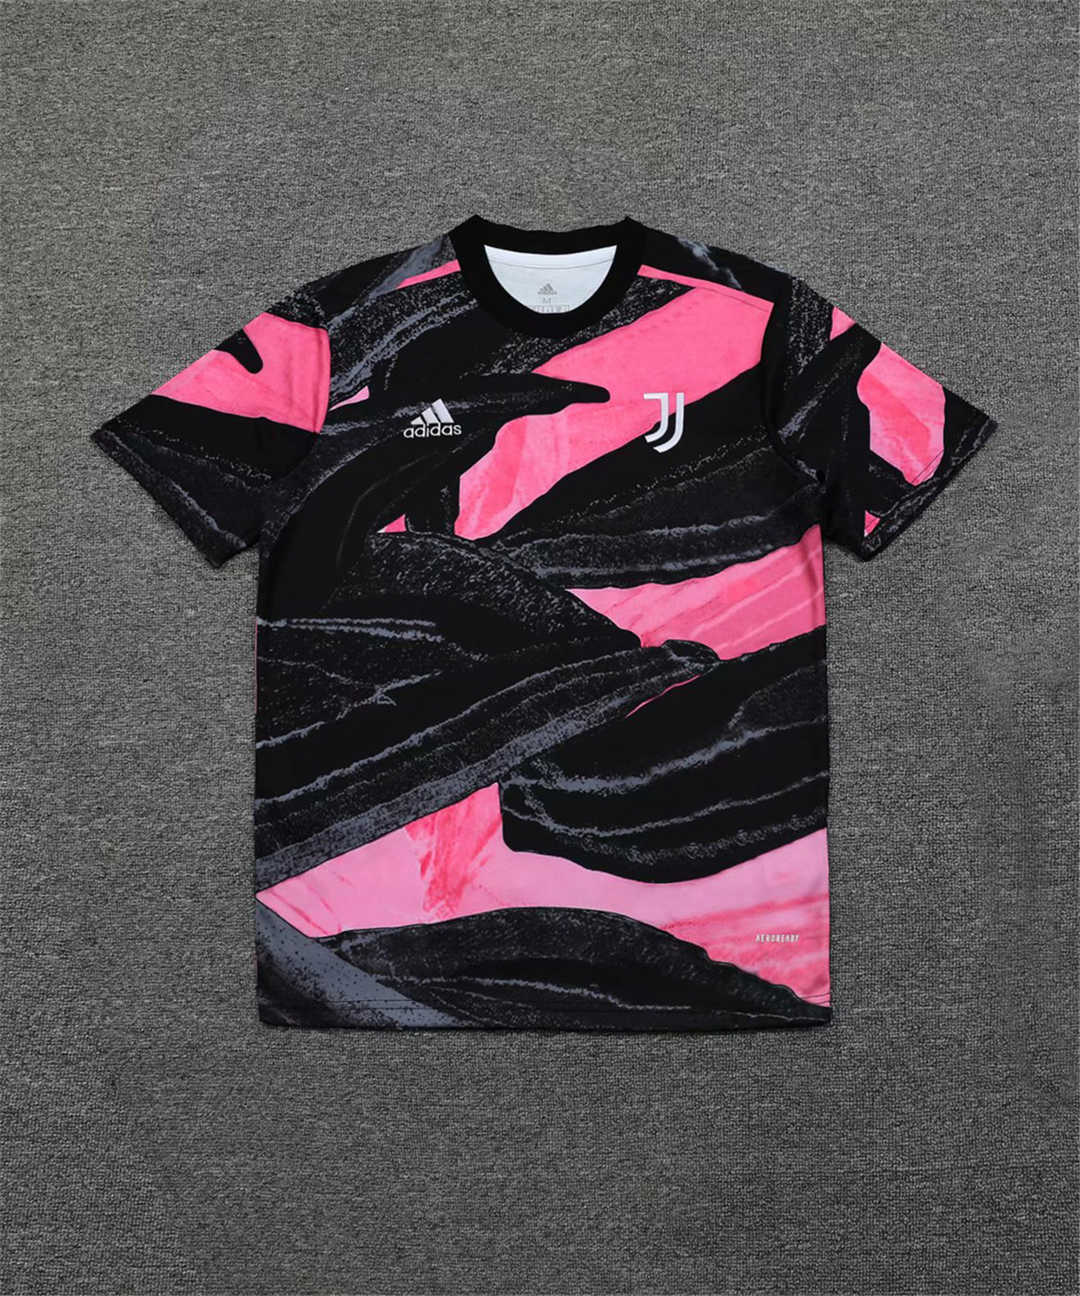 2020/21 Juventus UCL Black - Pink Mens Soccer Traning Jersey